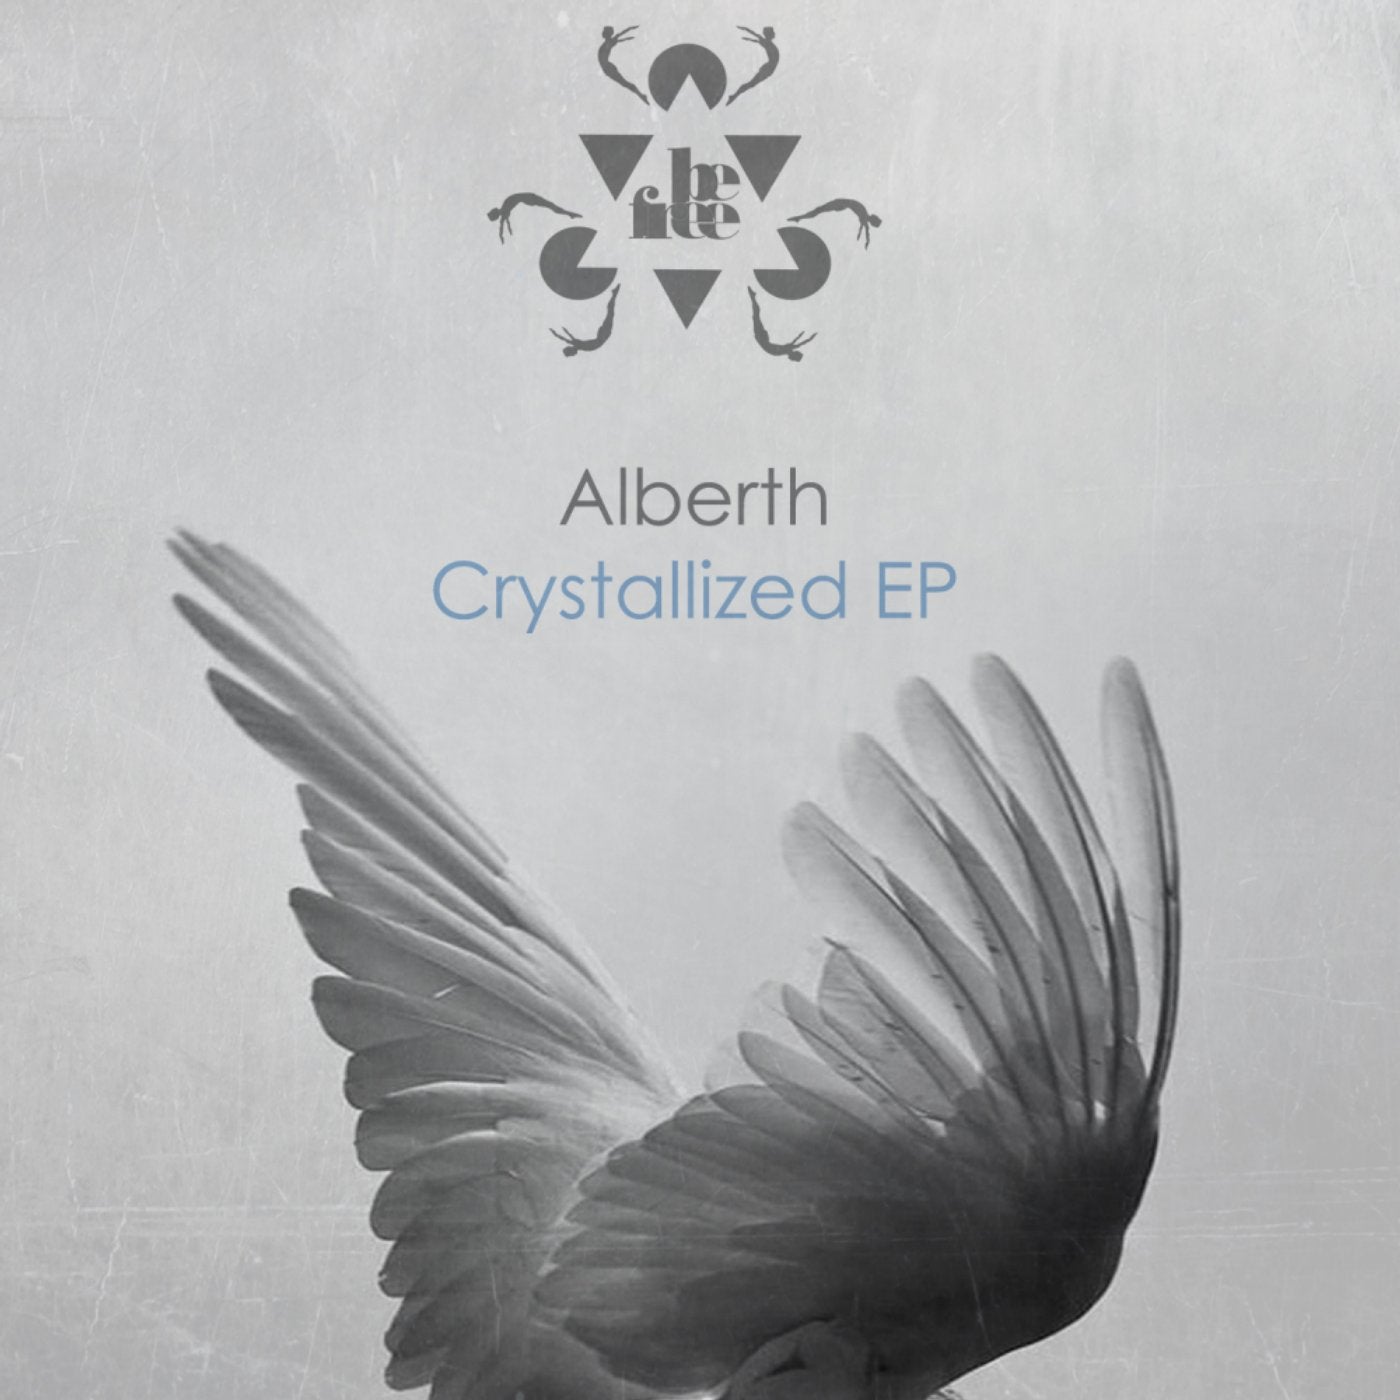 Crystallized EP